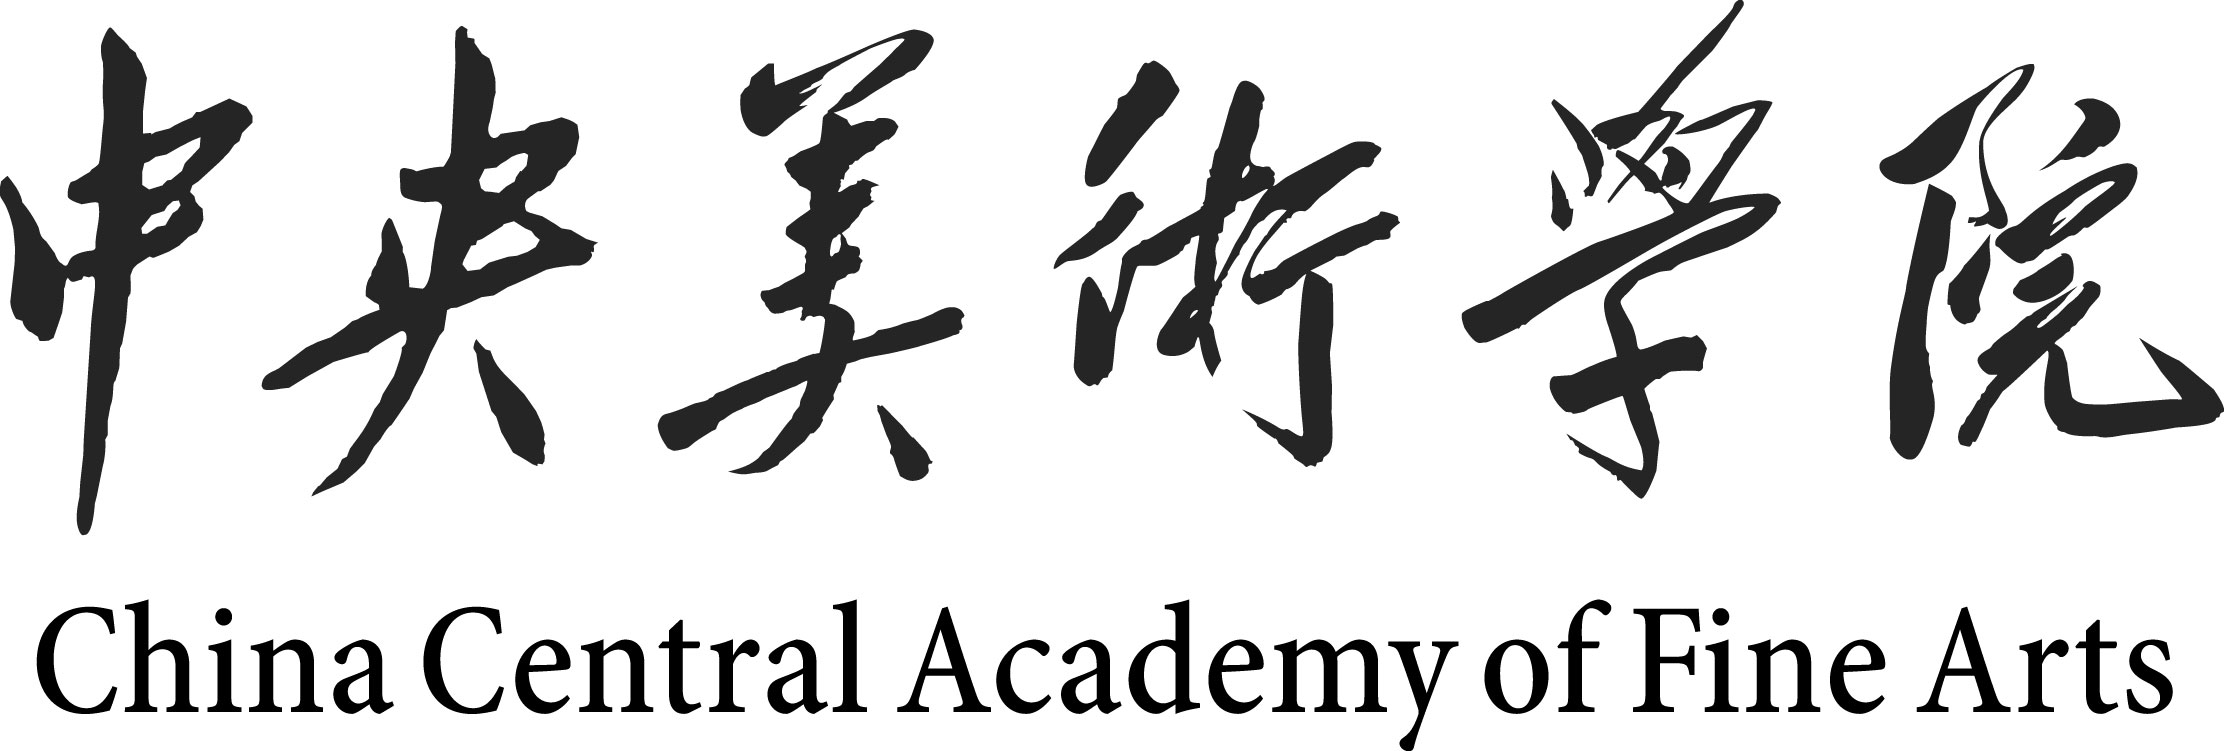 中央美术学院logo壁纸图片